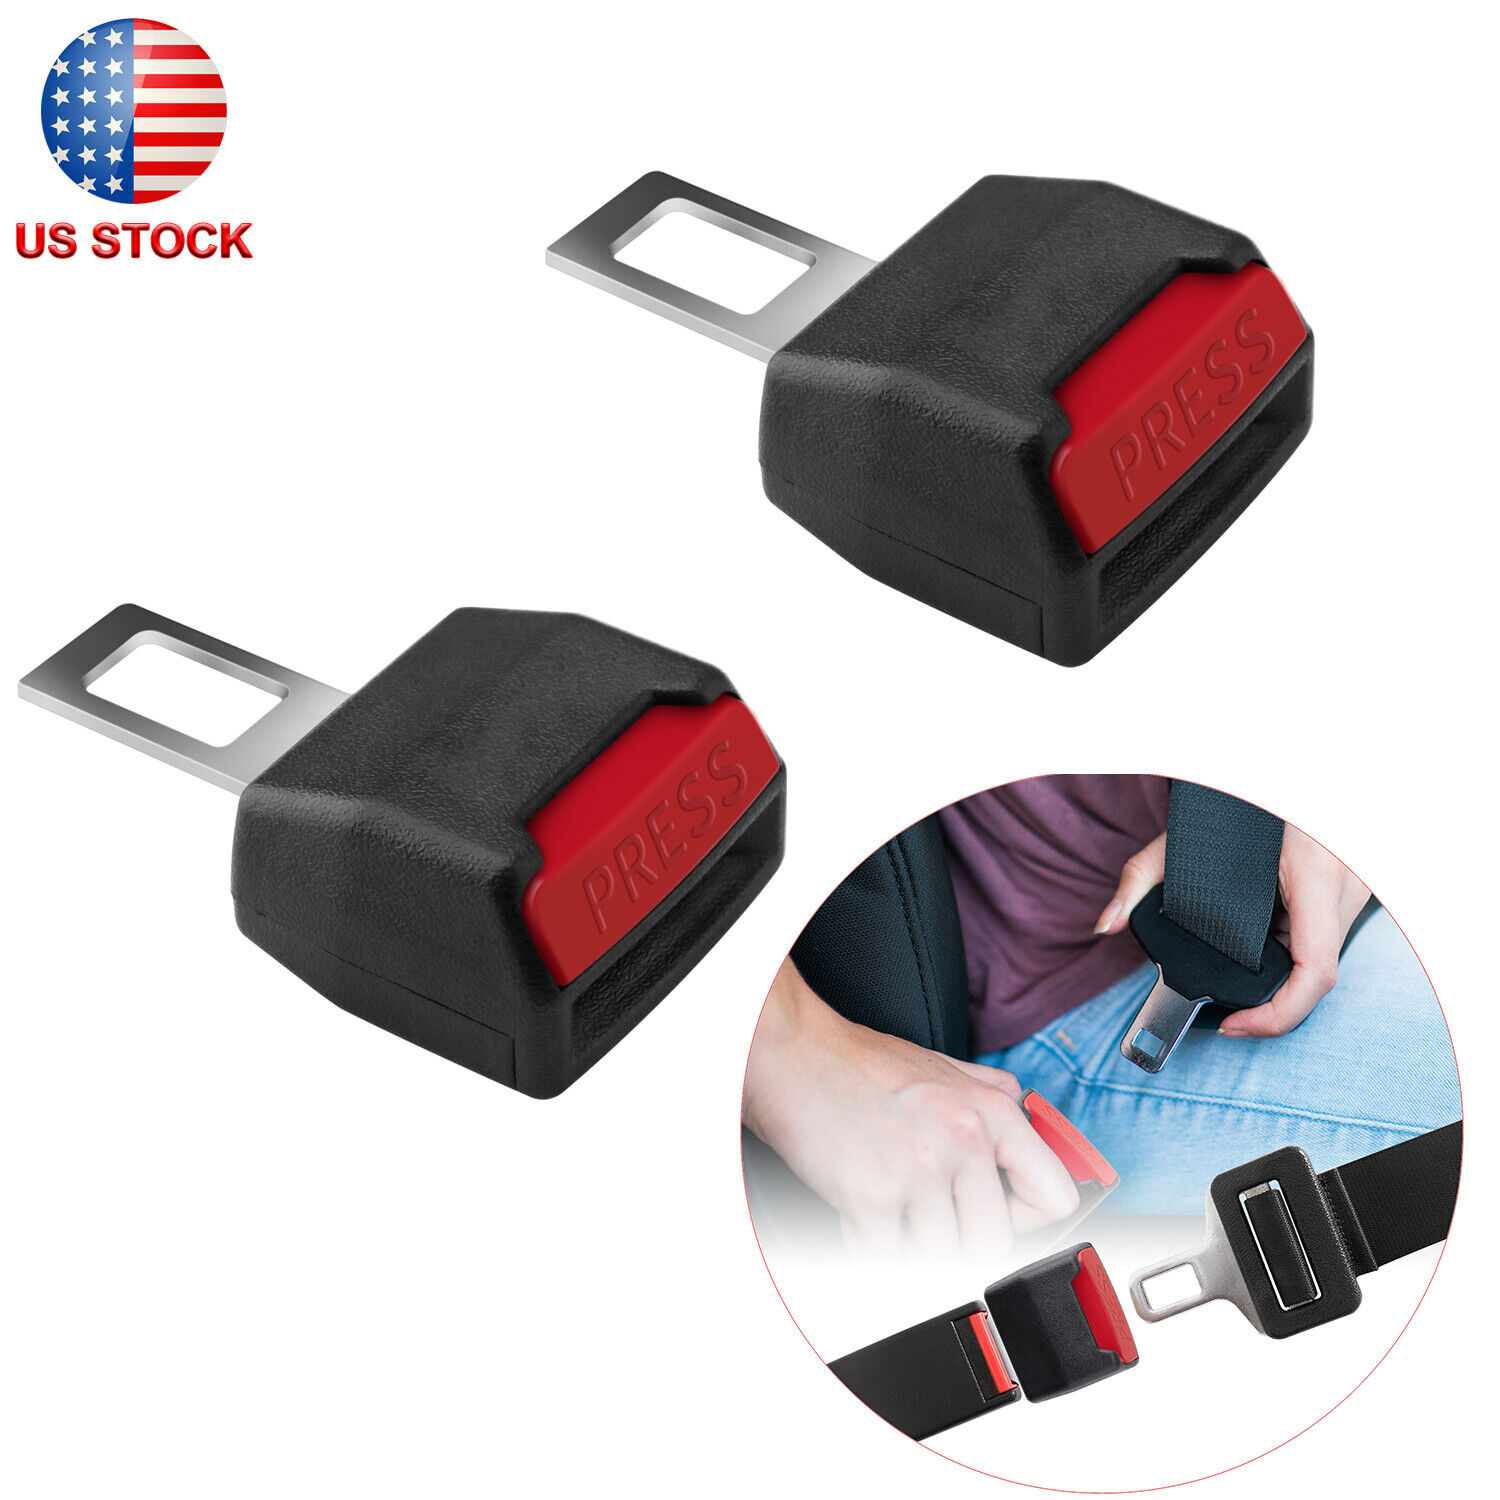 Universal Car Truck Safety Seat Belt Extender Extension Seatbelt Buckle Adapter